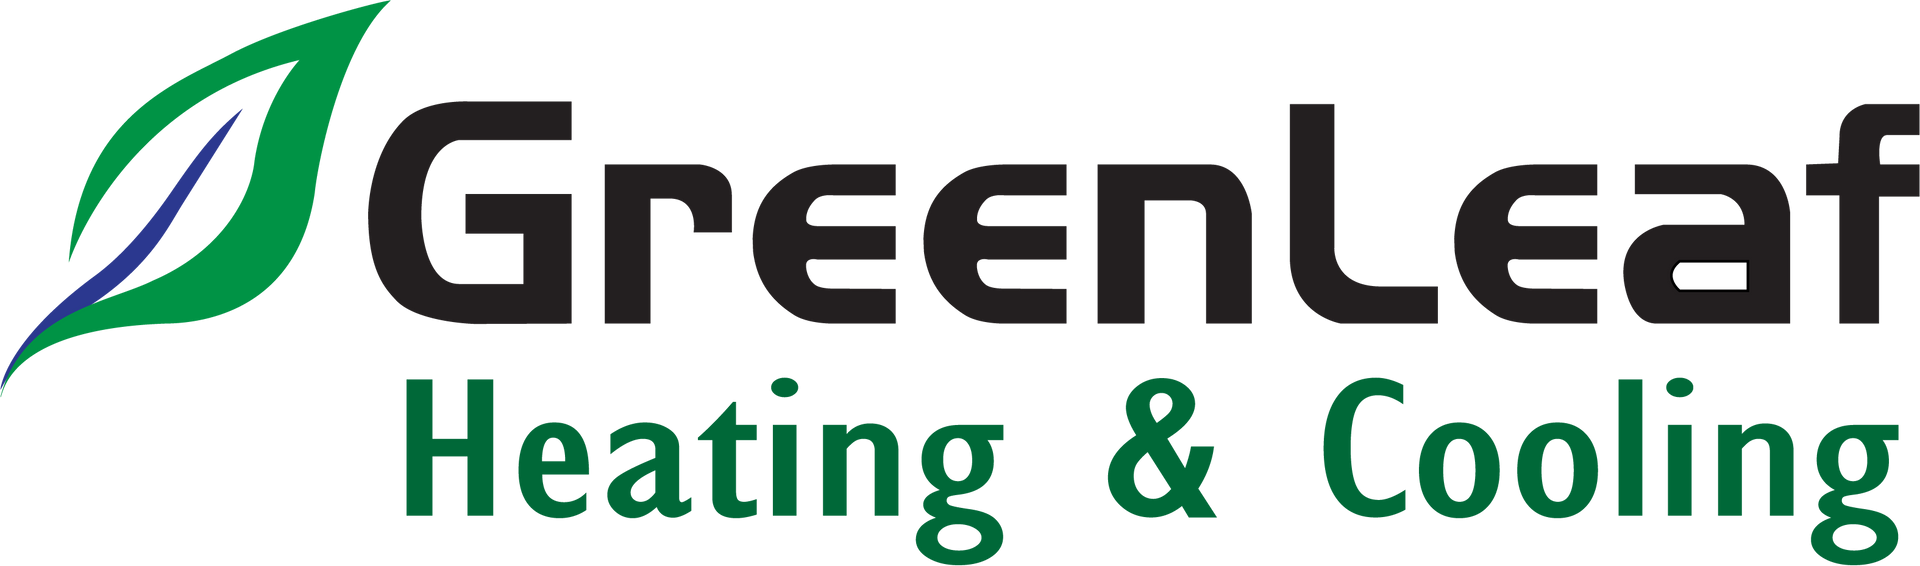 Greenleaf Heating & Cooling